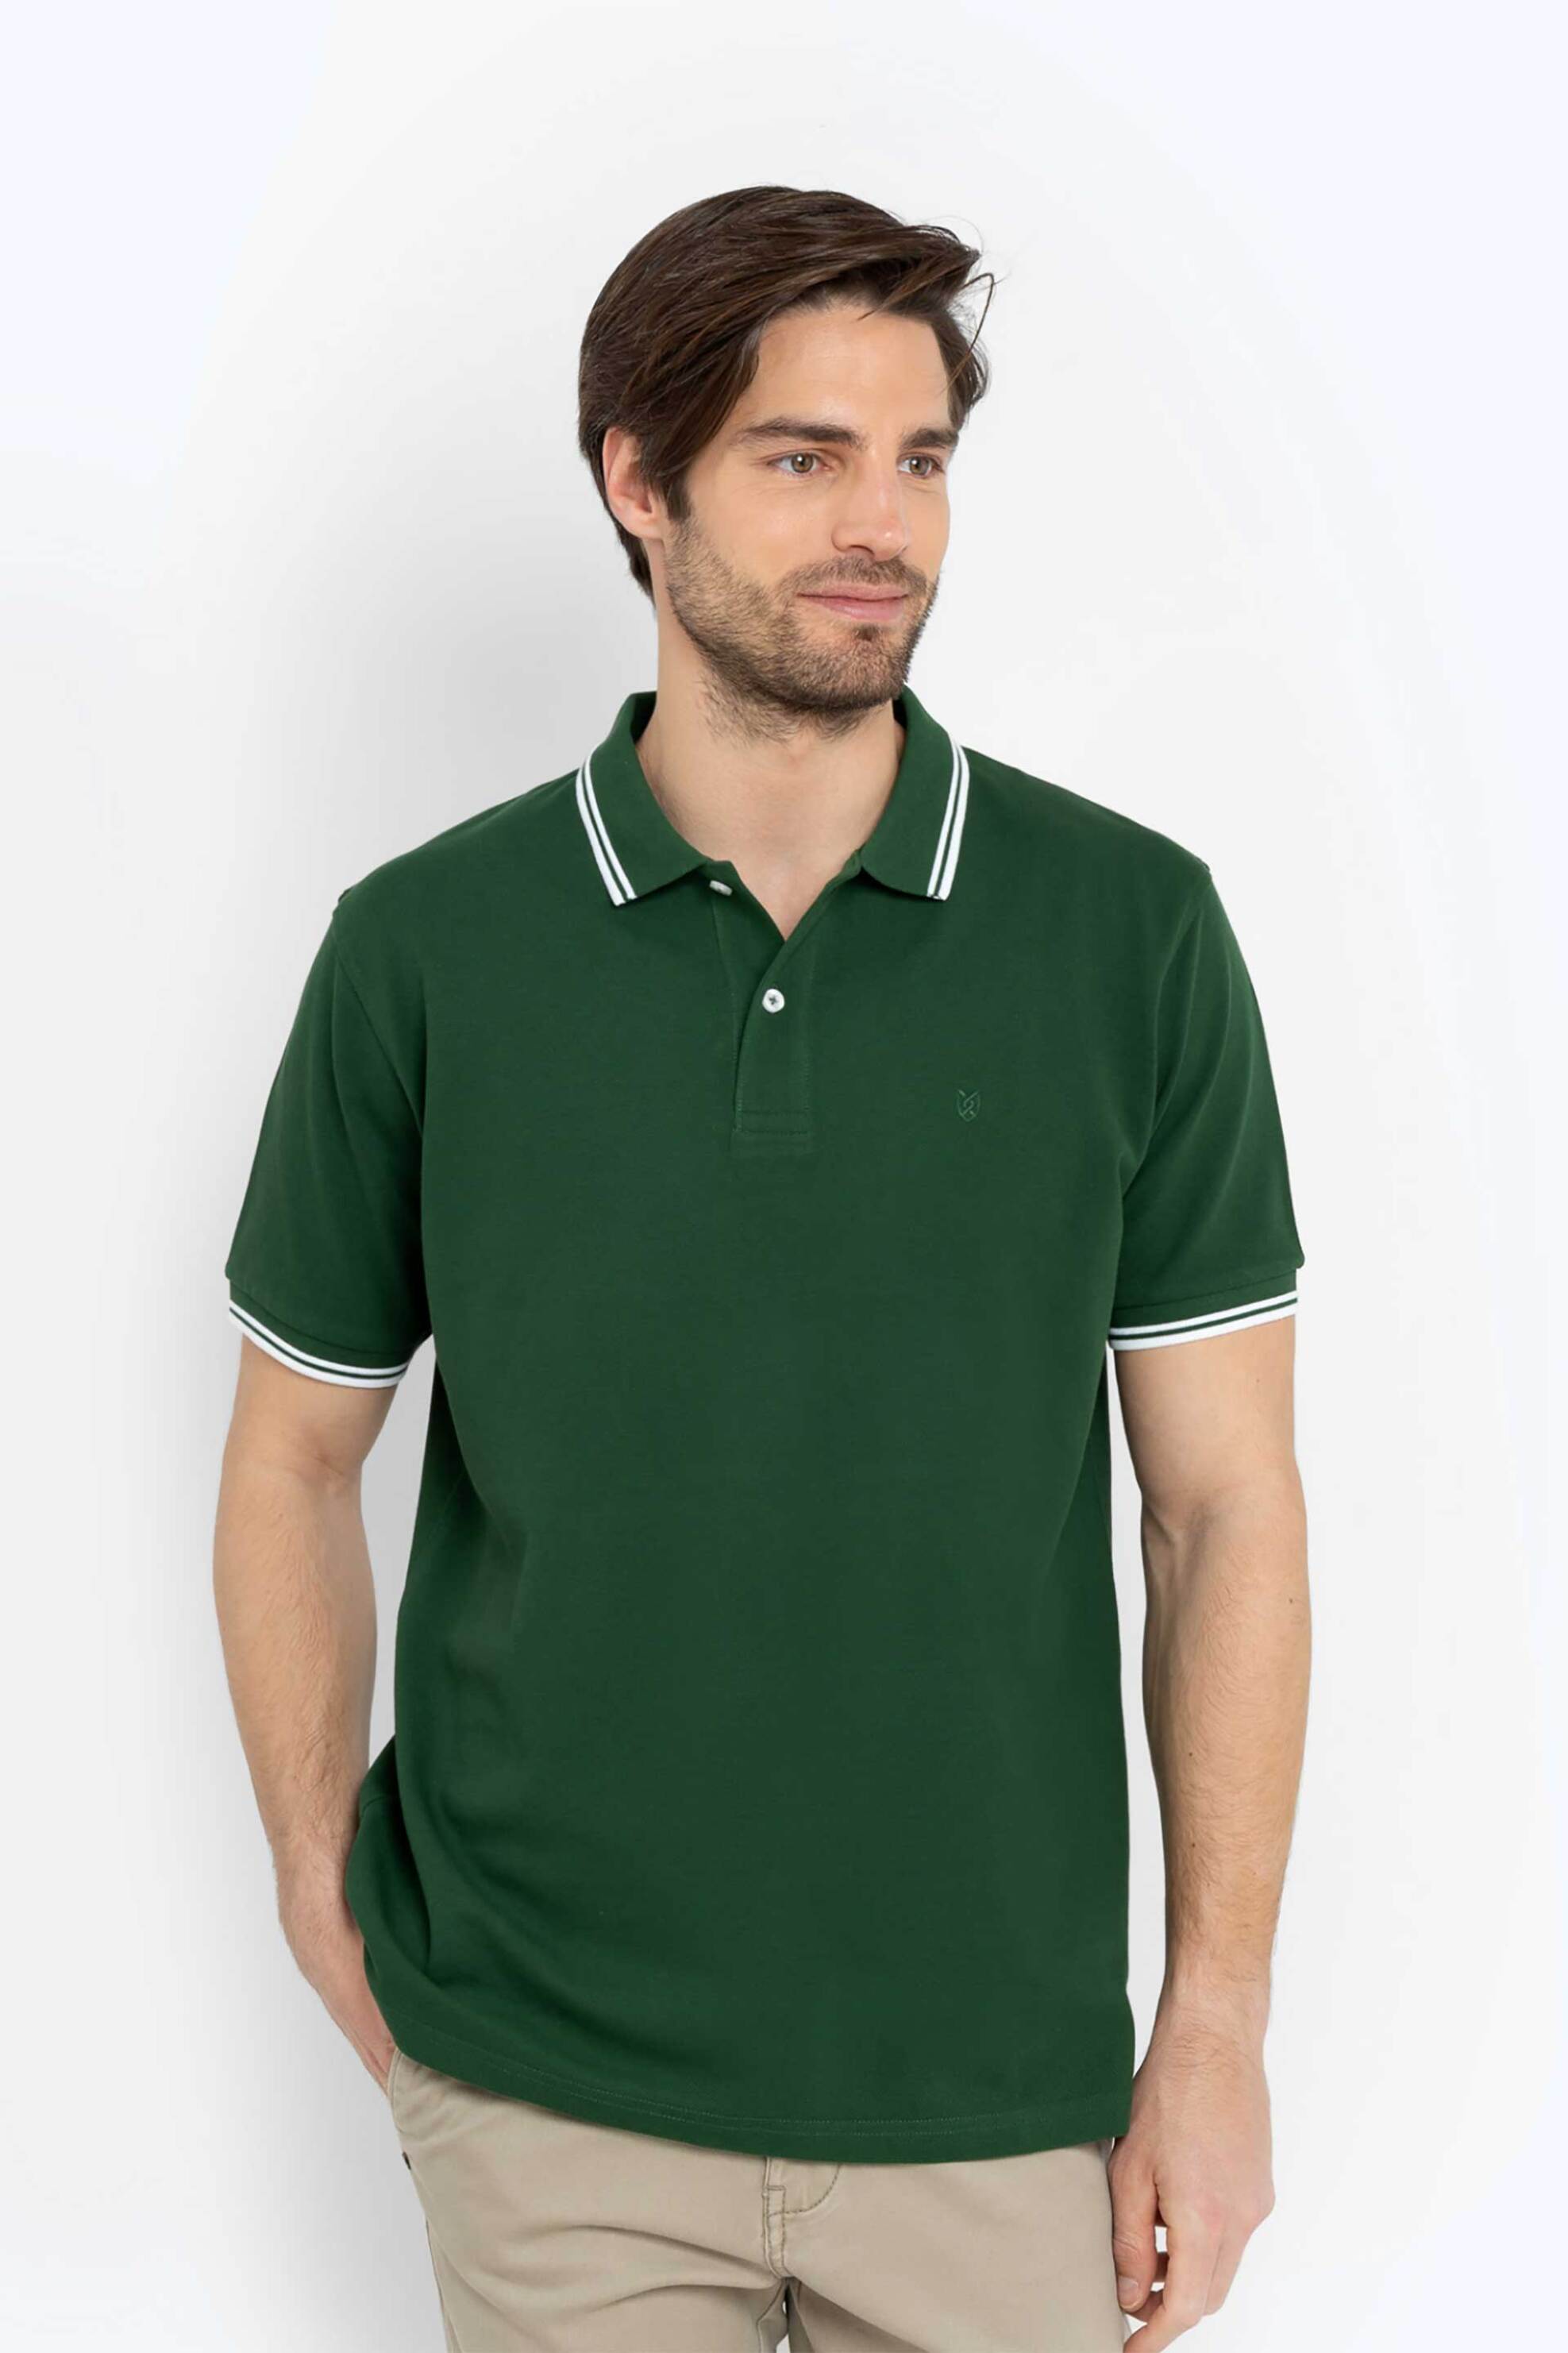 Ανδρική Μόδα > Ανδρικά Ρούχα > Ανδρικές Μπλούζες > Ανδρικές Μπλούζες Πολο The Bostonians ανδρική πόλο μπλούζα με contrast λεπτομέρειες και κεντημένο λογότυπο Regular Fit - PS1271 Πράσινο Σκούρο